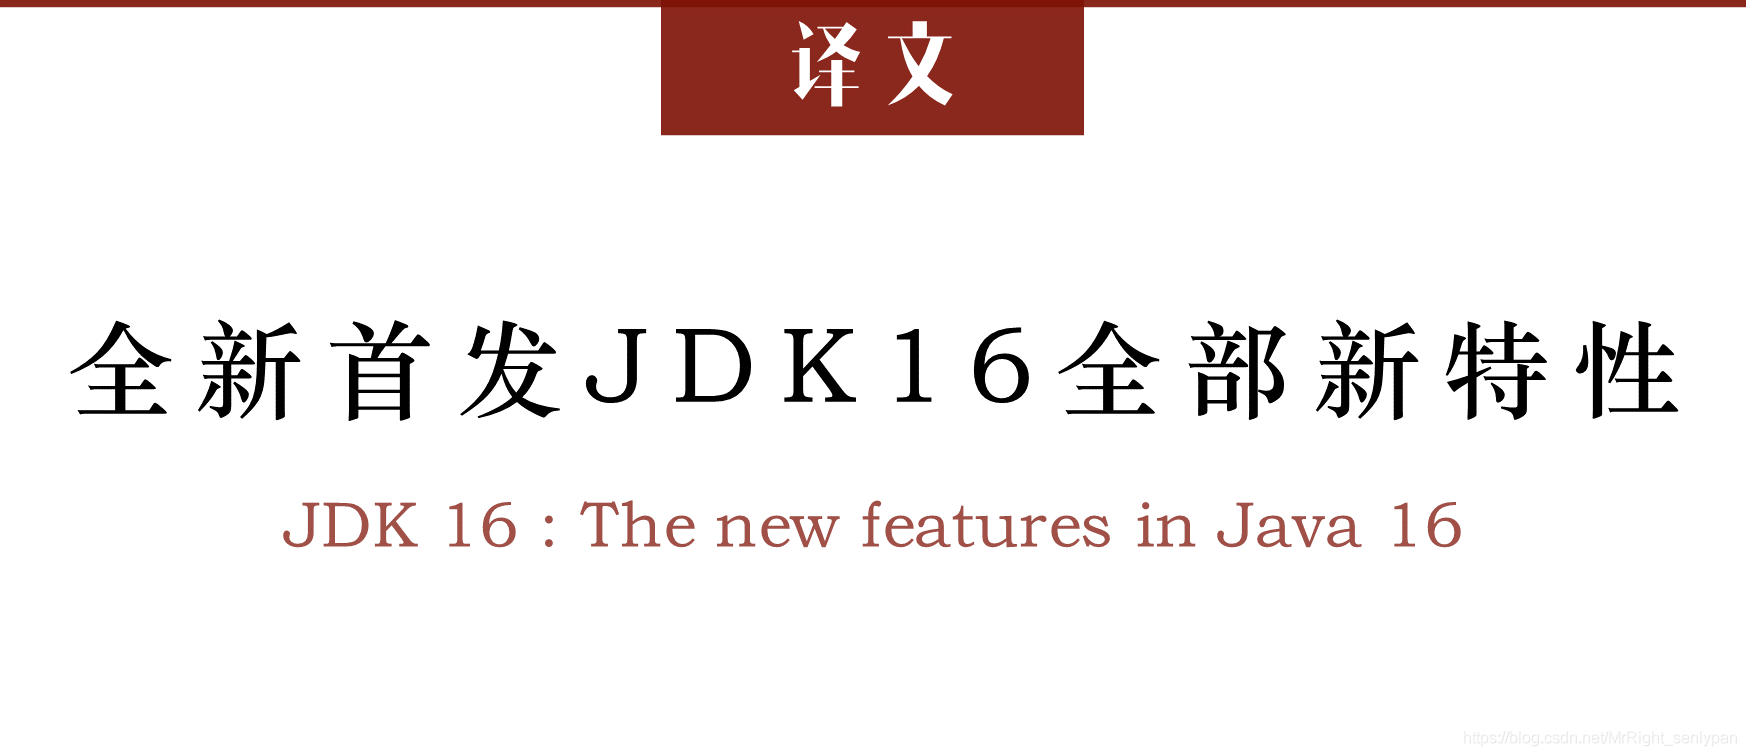 译文《全新首发JDK 16全部新特性》